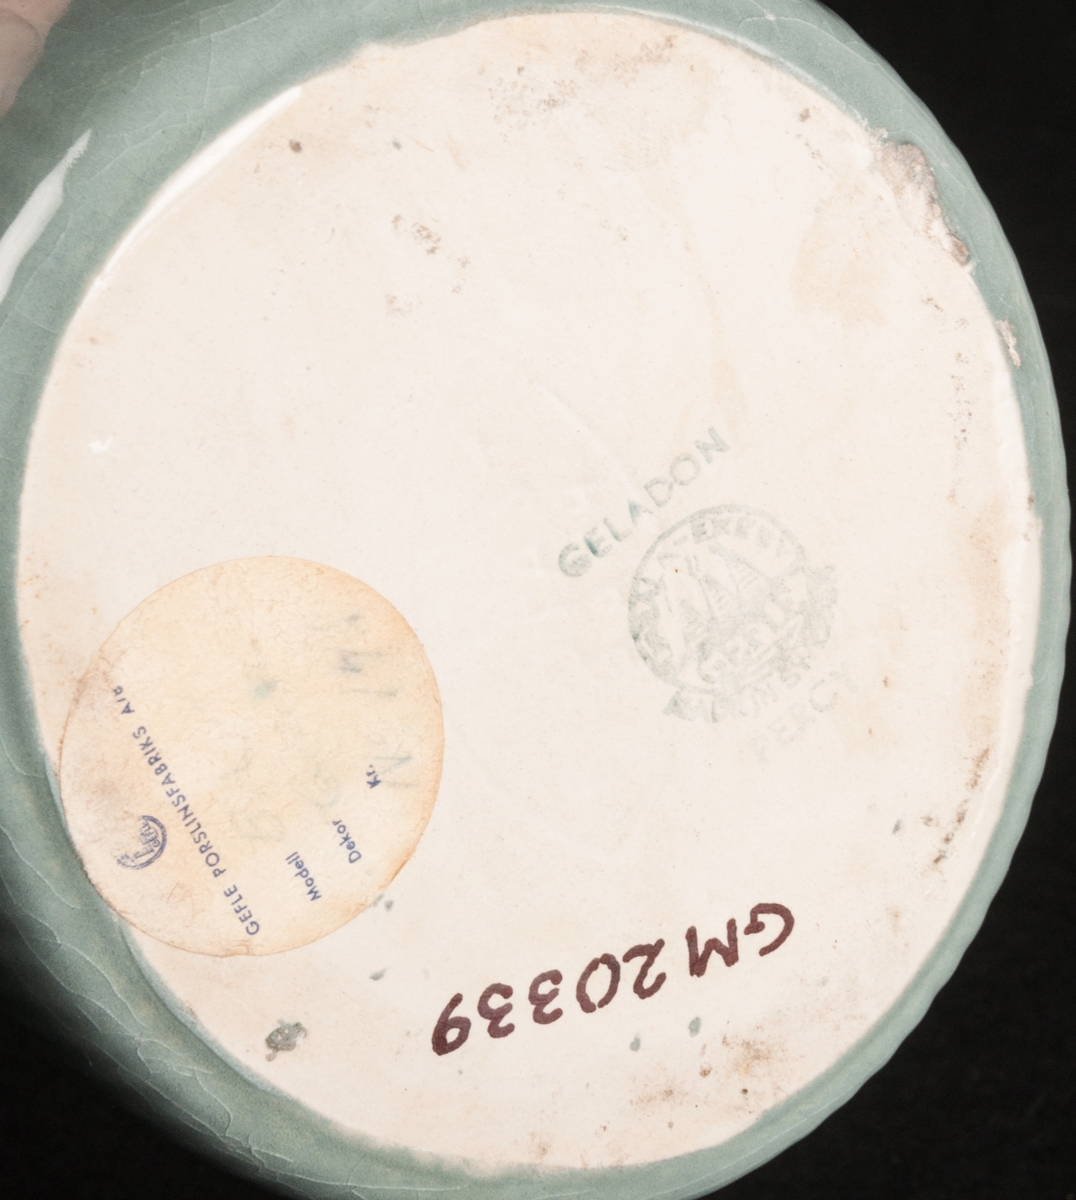 Tillbringare av flintgods, modell -BA, formgiven av Arthur Percy för Gefle Porslinsfabrik. Smal, uppåtsträvande profil med lodgrepe. Aningen oval i formen. Buken vertikalt räfflad. Hög, uppåtböjd och spetsig snip. Glasyr "Celadon 2", ingående i den ugnsfasta serien "Corona" tillverkad 1955. Färgen grågrön, insidan gräddgul. Grön skorstensstämpel på vit grund med text "Celadon Upsala-Ekeby Gefle Made in Sweden Percy". Vidare är "Gefle eldfast" stämplat i massan.